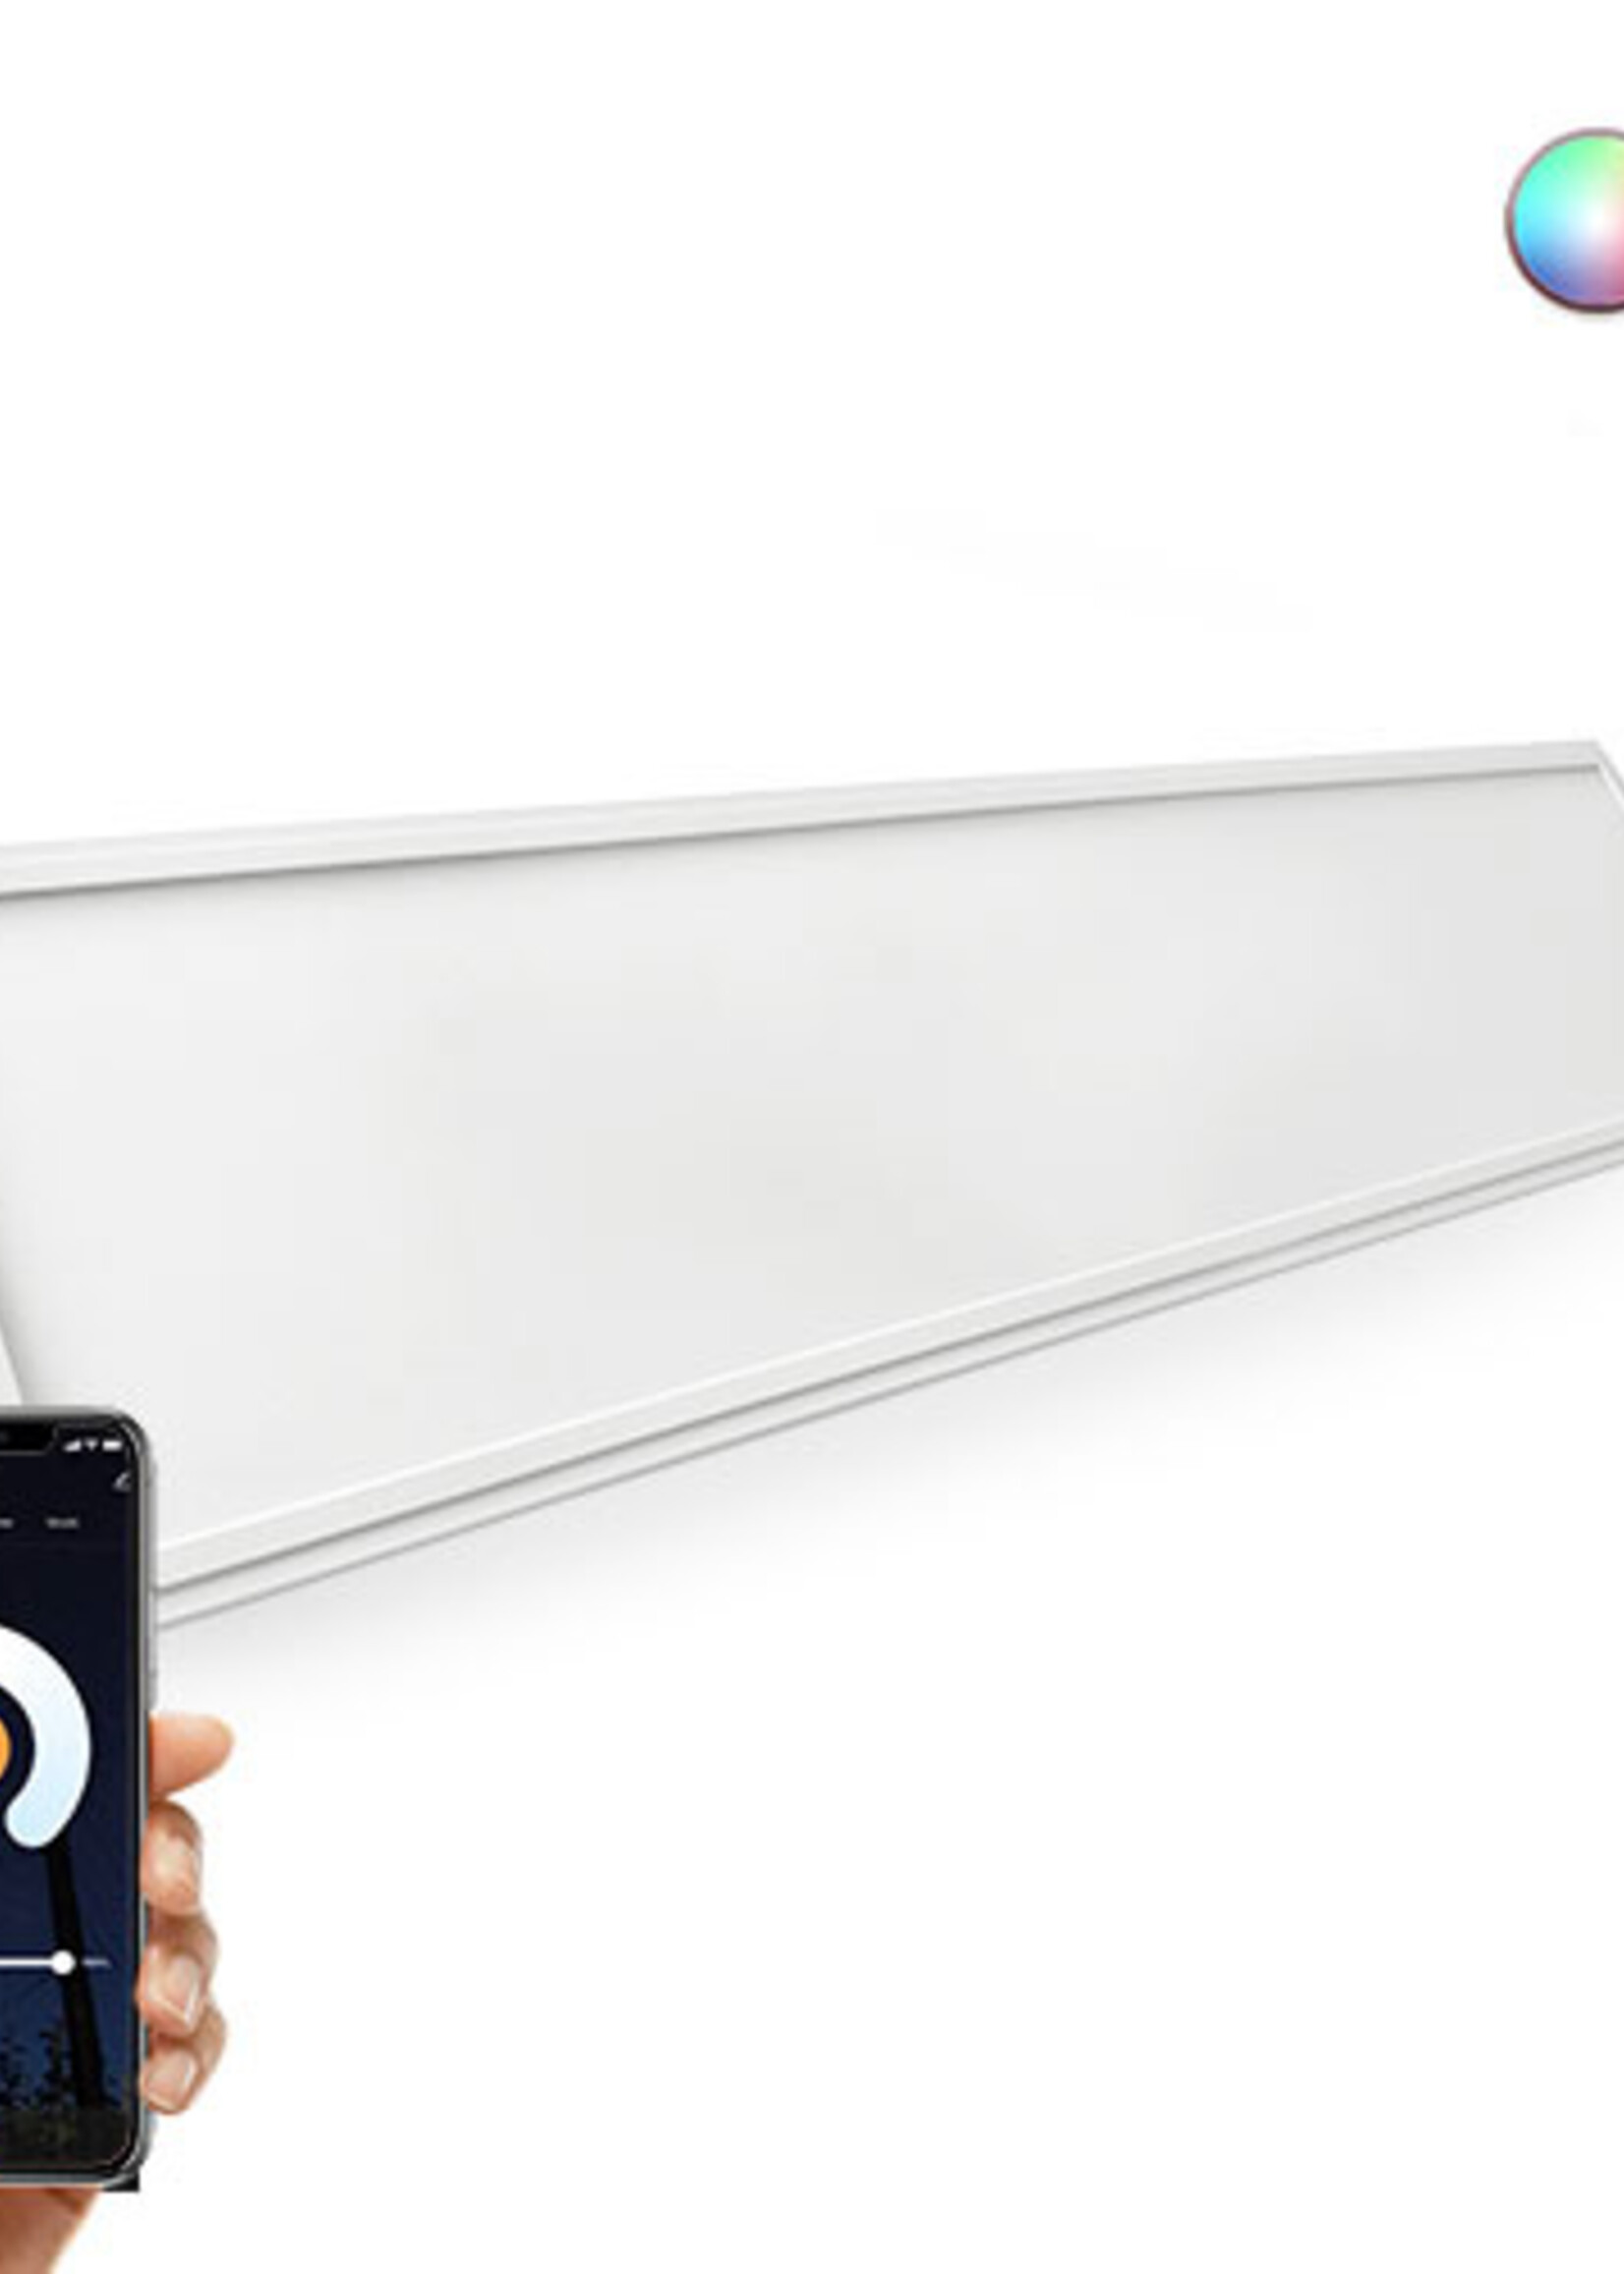 LEDWINKEL-Online WiFi LED Panel 30x120cm RGB+CCT 40W Edge-lit